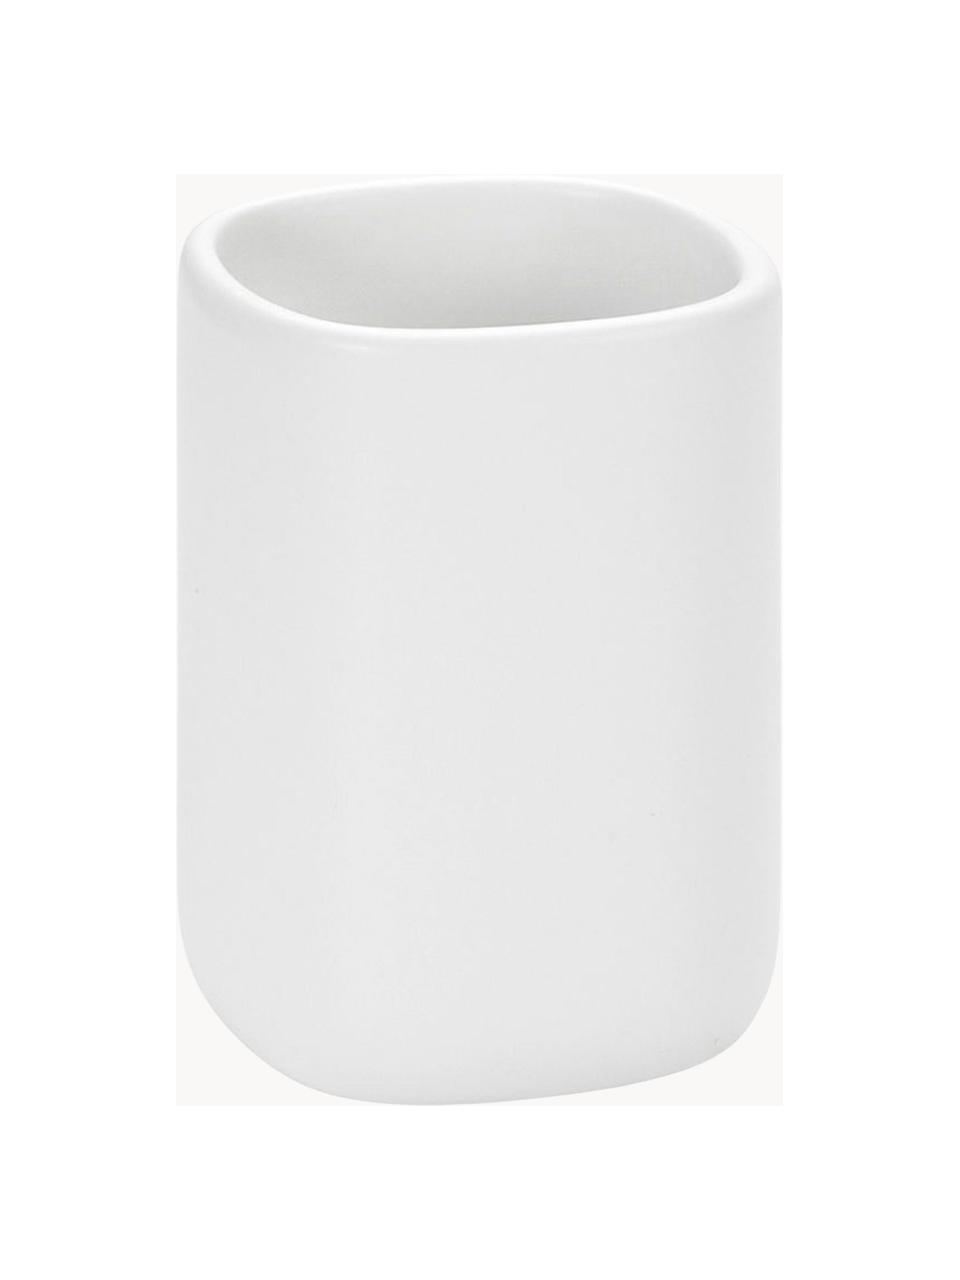 Keramik-Zahnputzbecher Wili, Keramik, Weiß, Ø 7 x H 11 cm